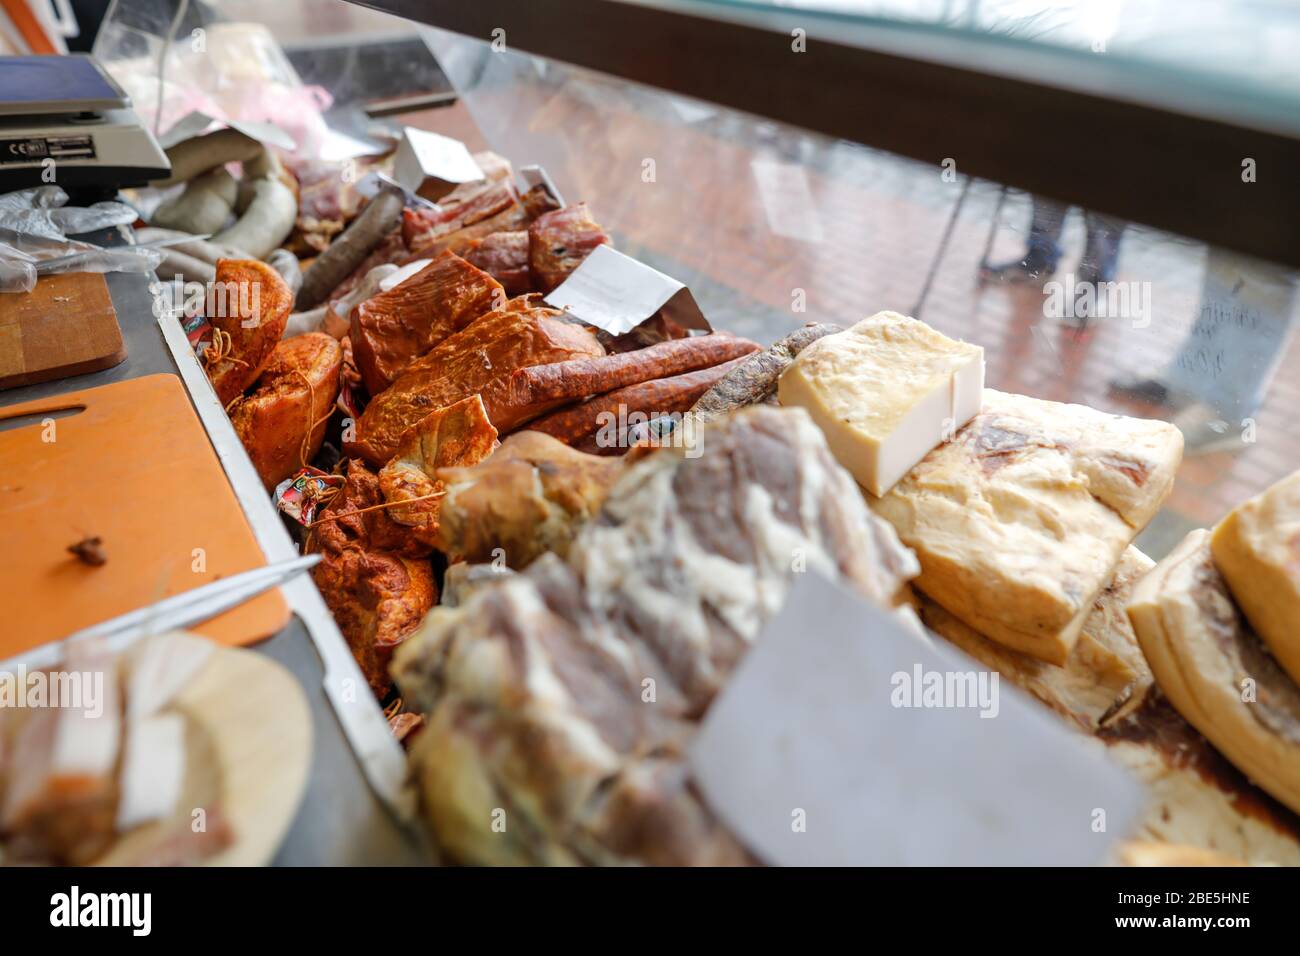 Imagen de profundidad de campo reducida (enfoque selectivo) con productos tradicionales rumanos de carne, principalmente de cerdo, en exhibición en un mercado. Foto de stock